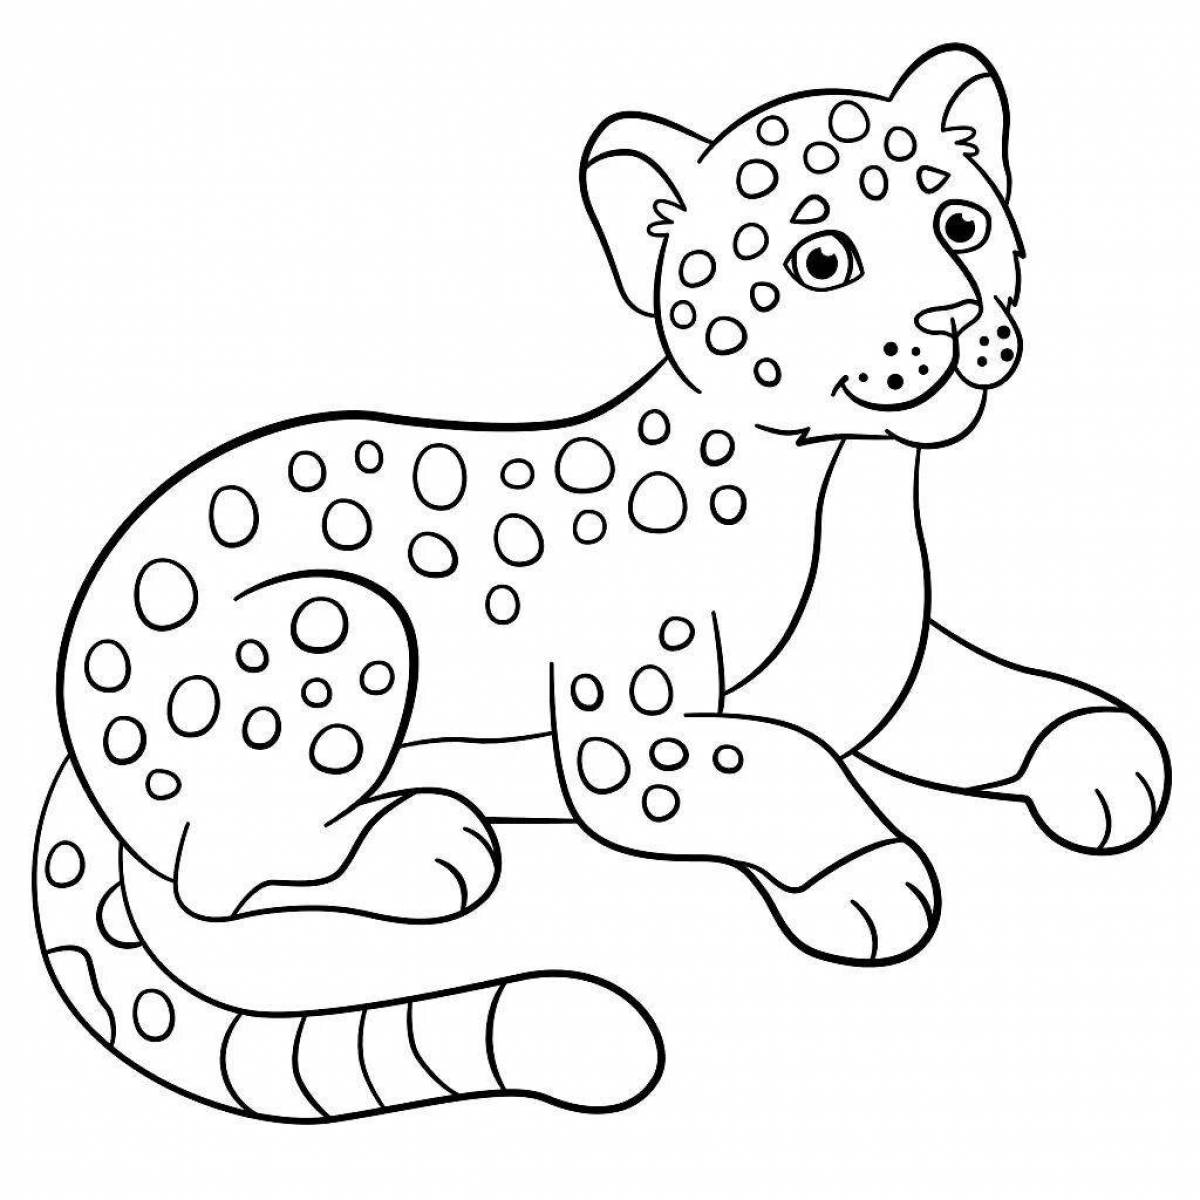 Jaguar dynamic coloring book for kids